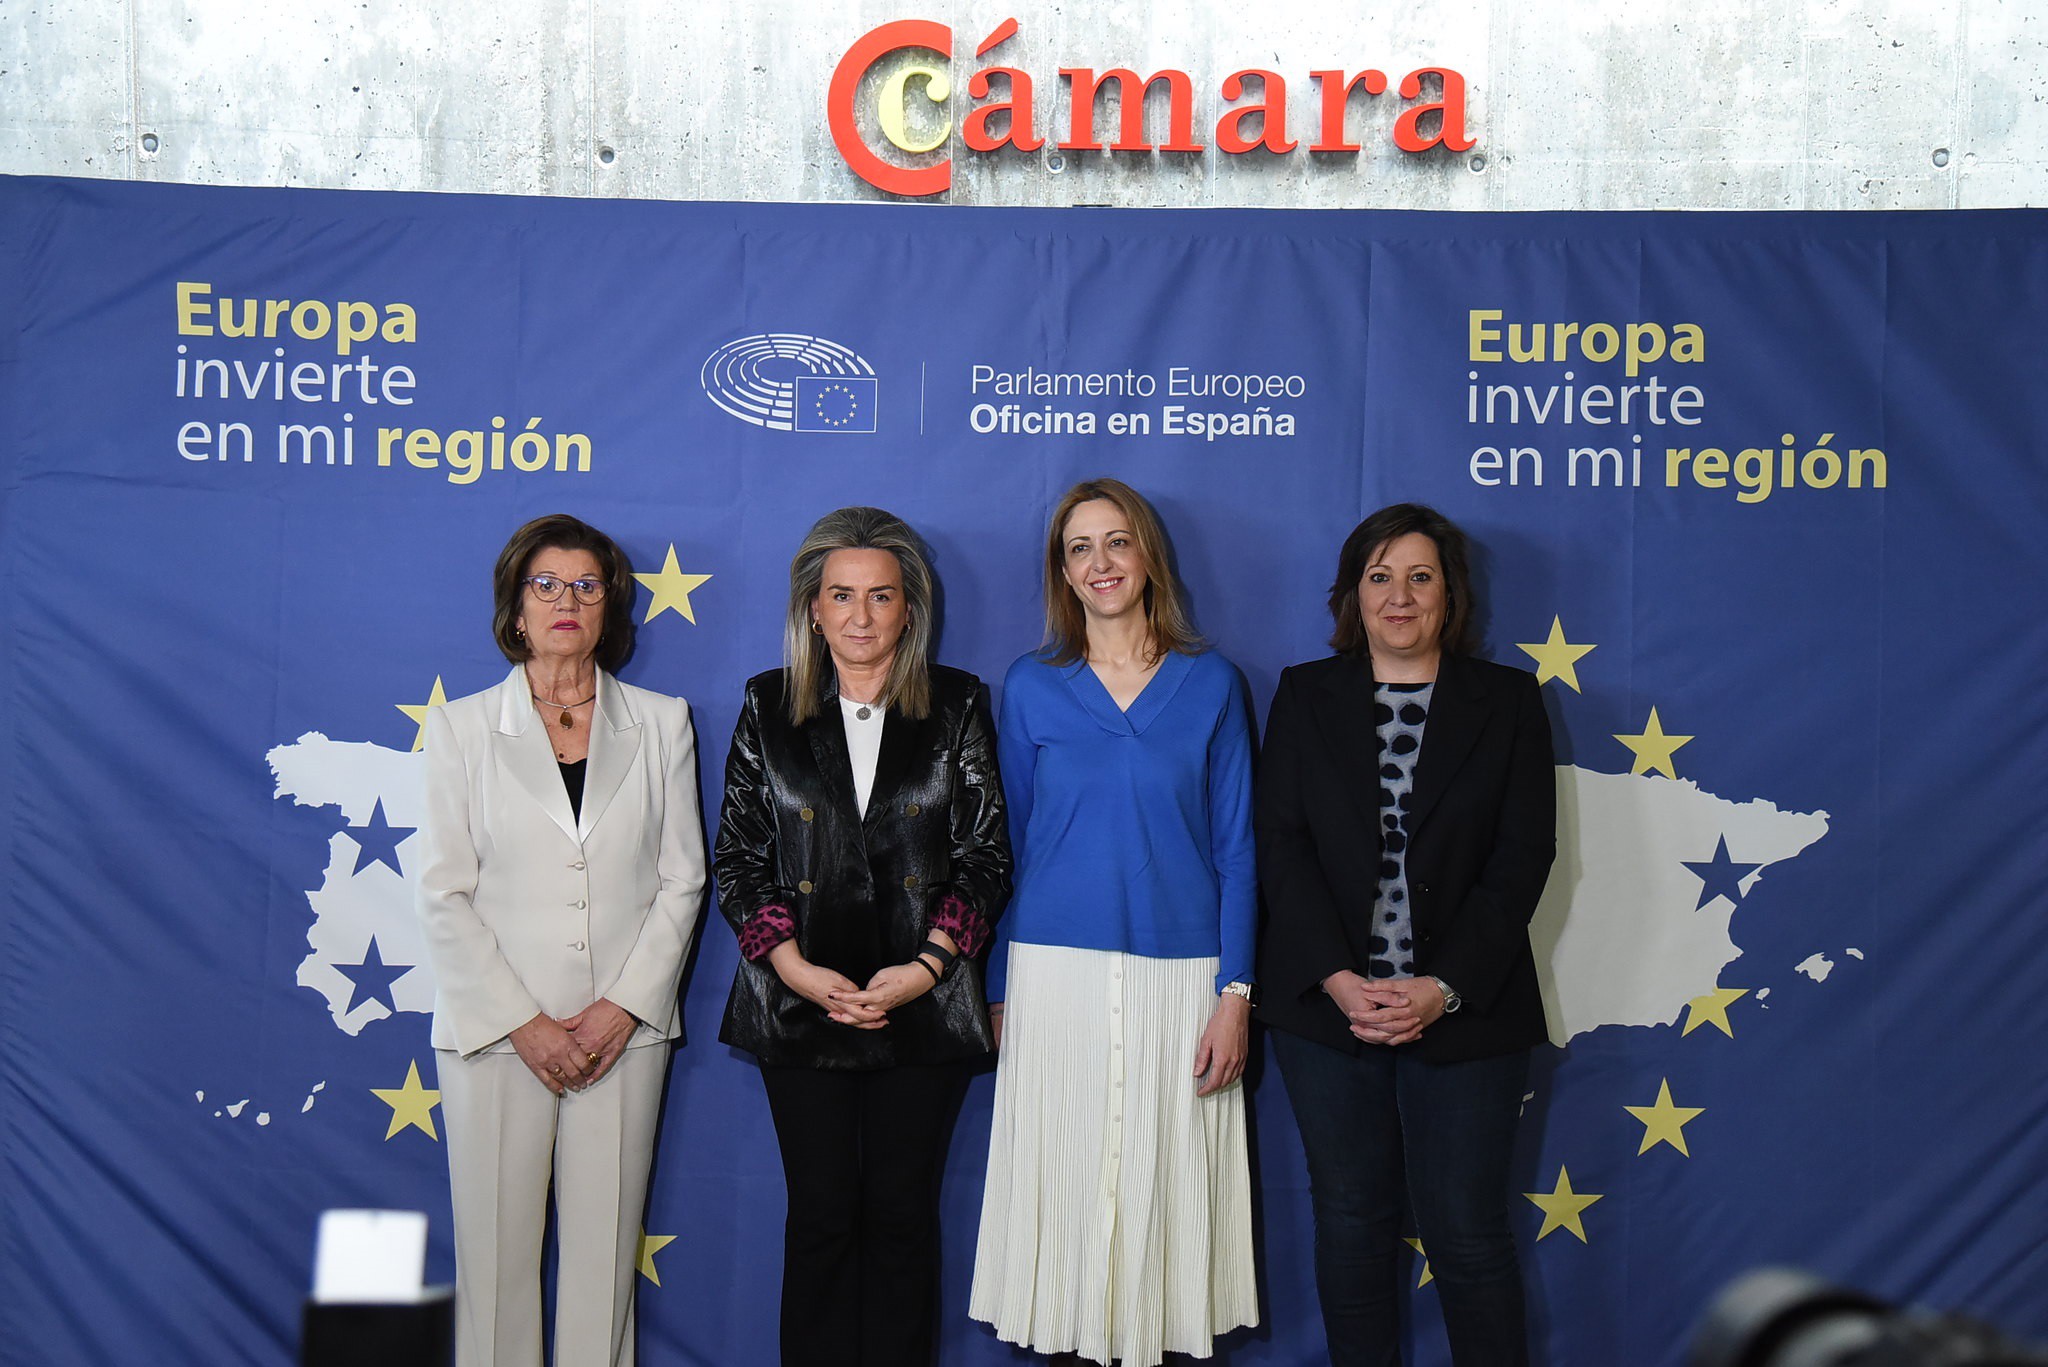 Inauguración del seminario 'Europa invierte en mi región' celebrado en Toledo